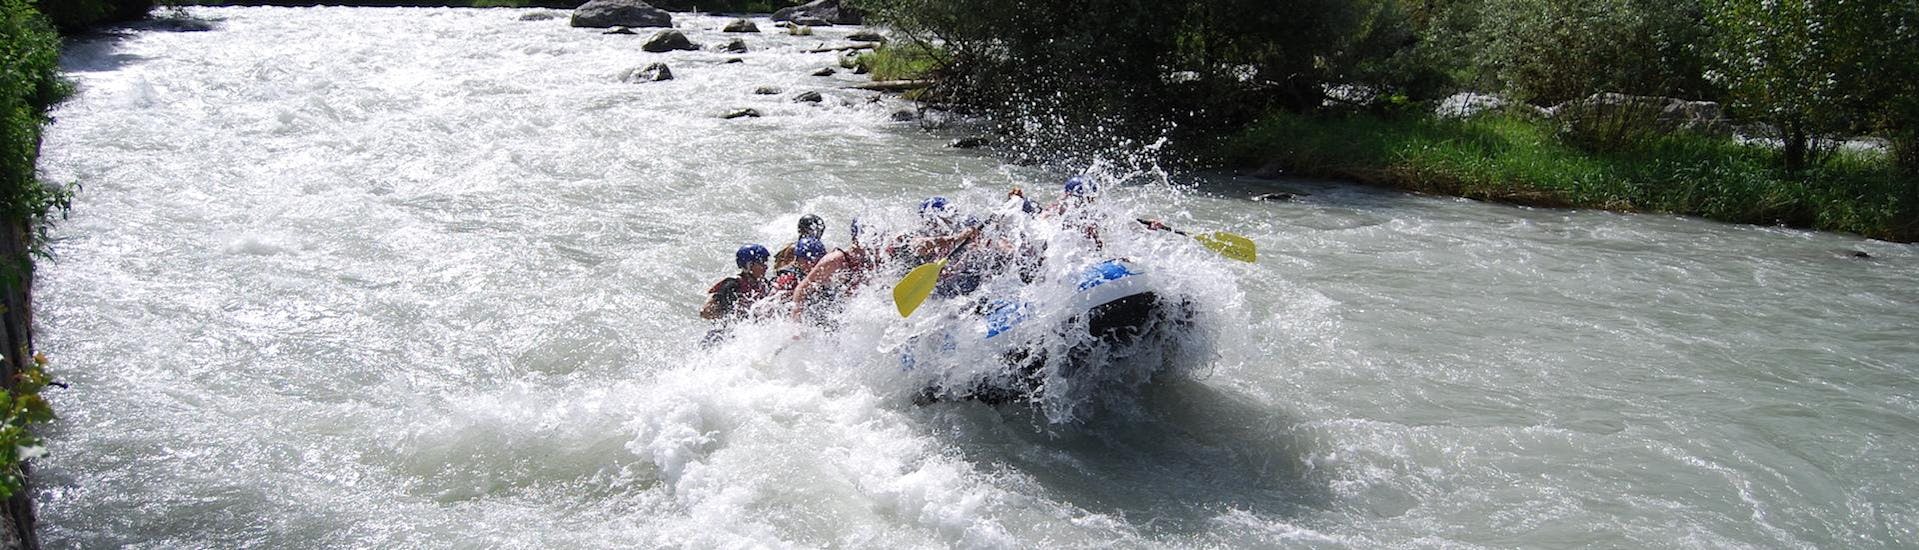 Gruppo di partecioanti si diverte durante il Rafting sull'Adda - Adrenalina con Indomita Valtellina River.